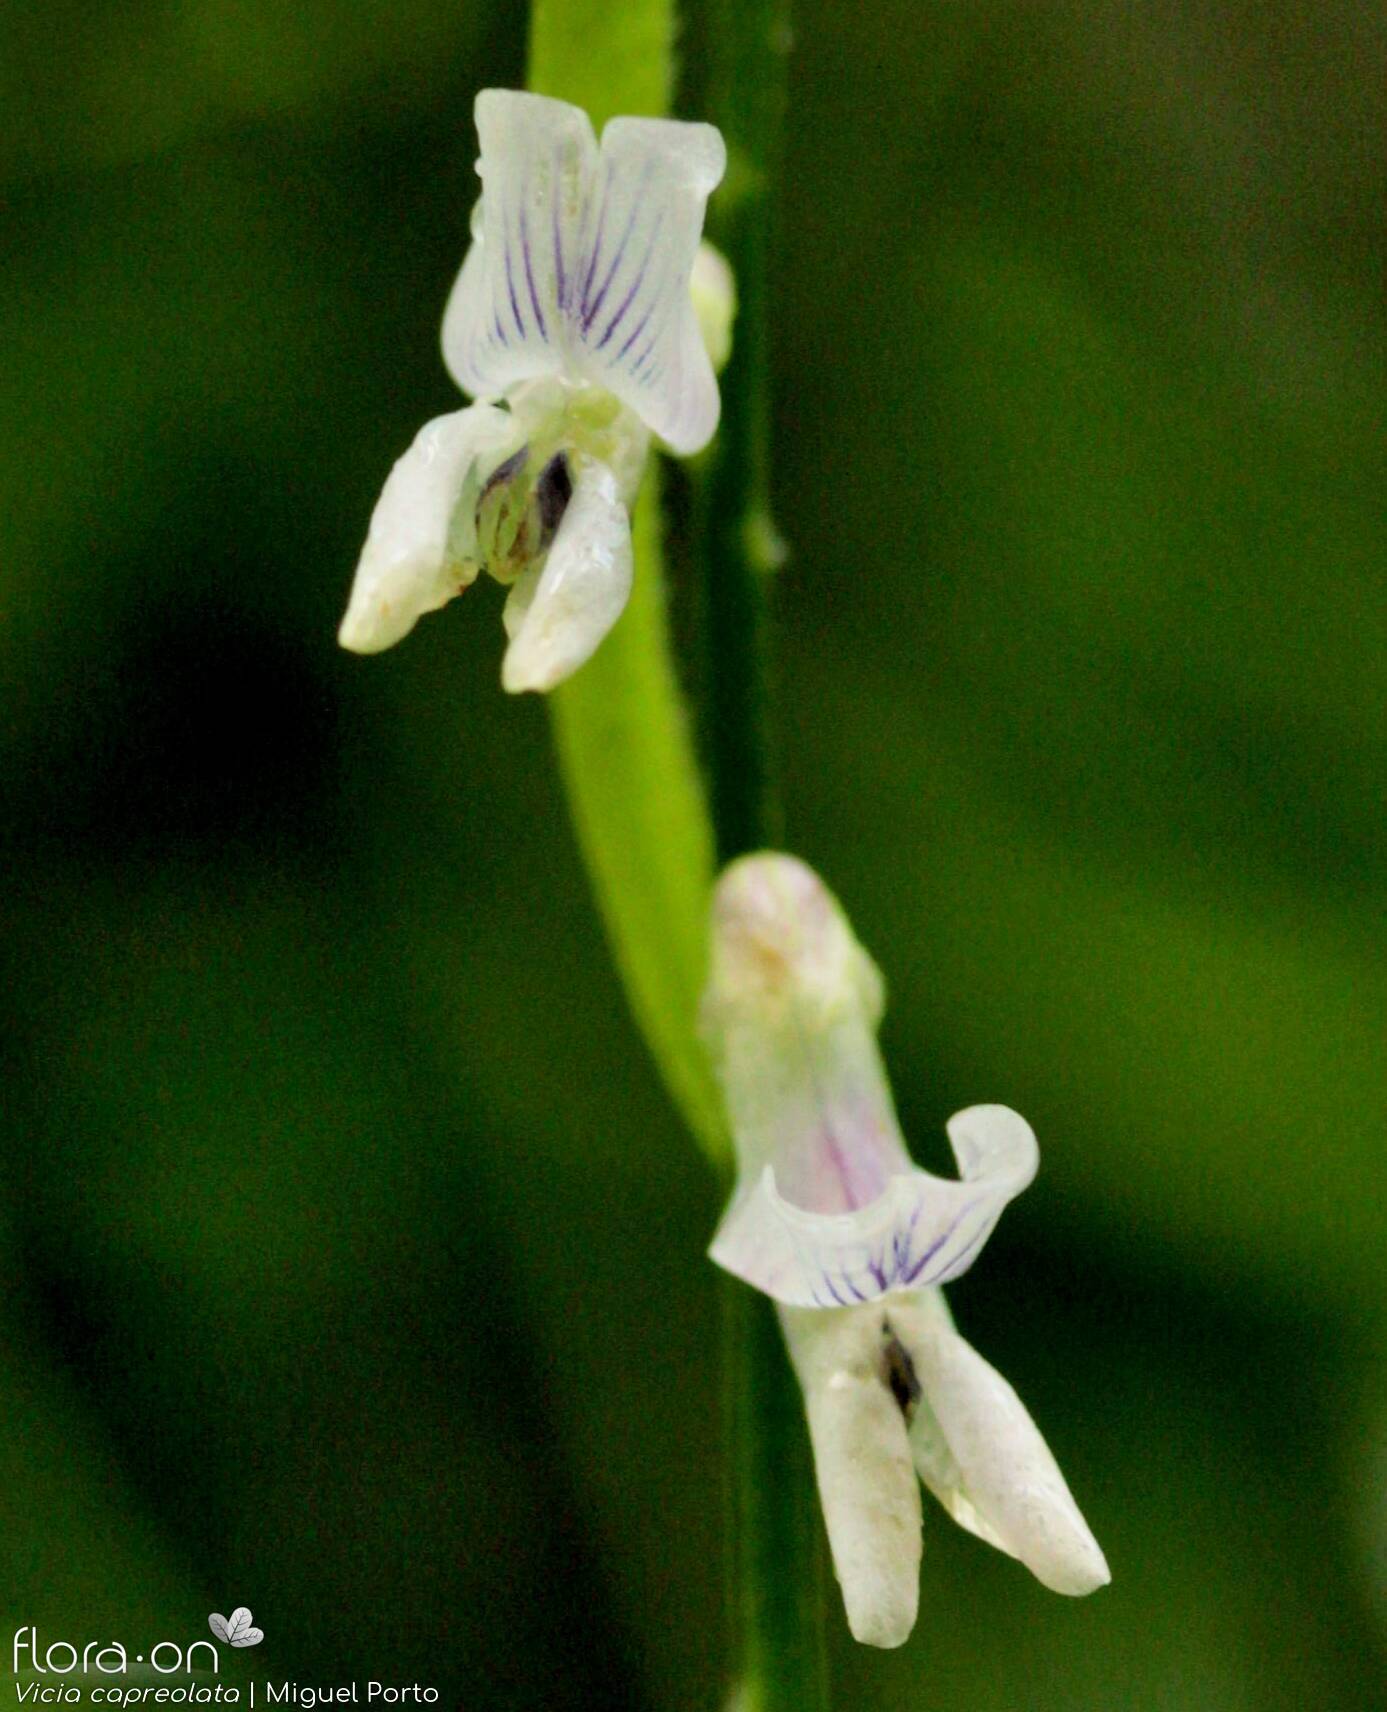 Vicia capreolata - Flor (close-up) | Miguel Porto; CC BY-NC 4.0